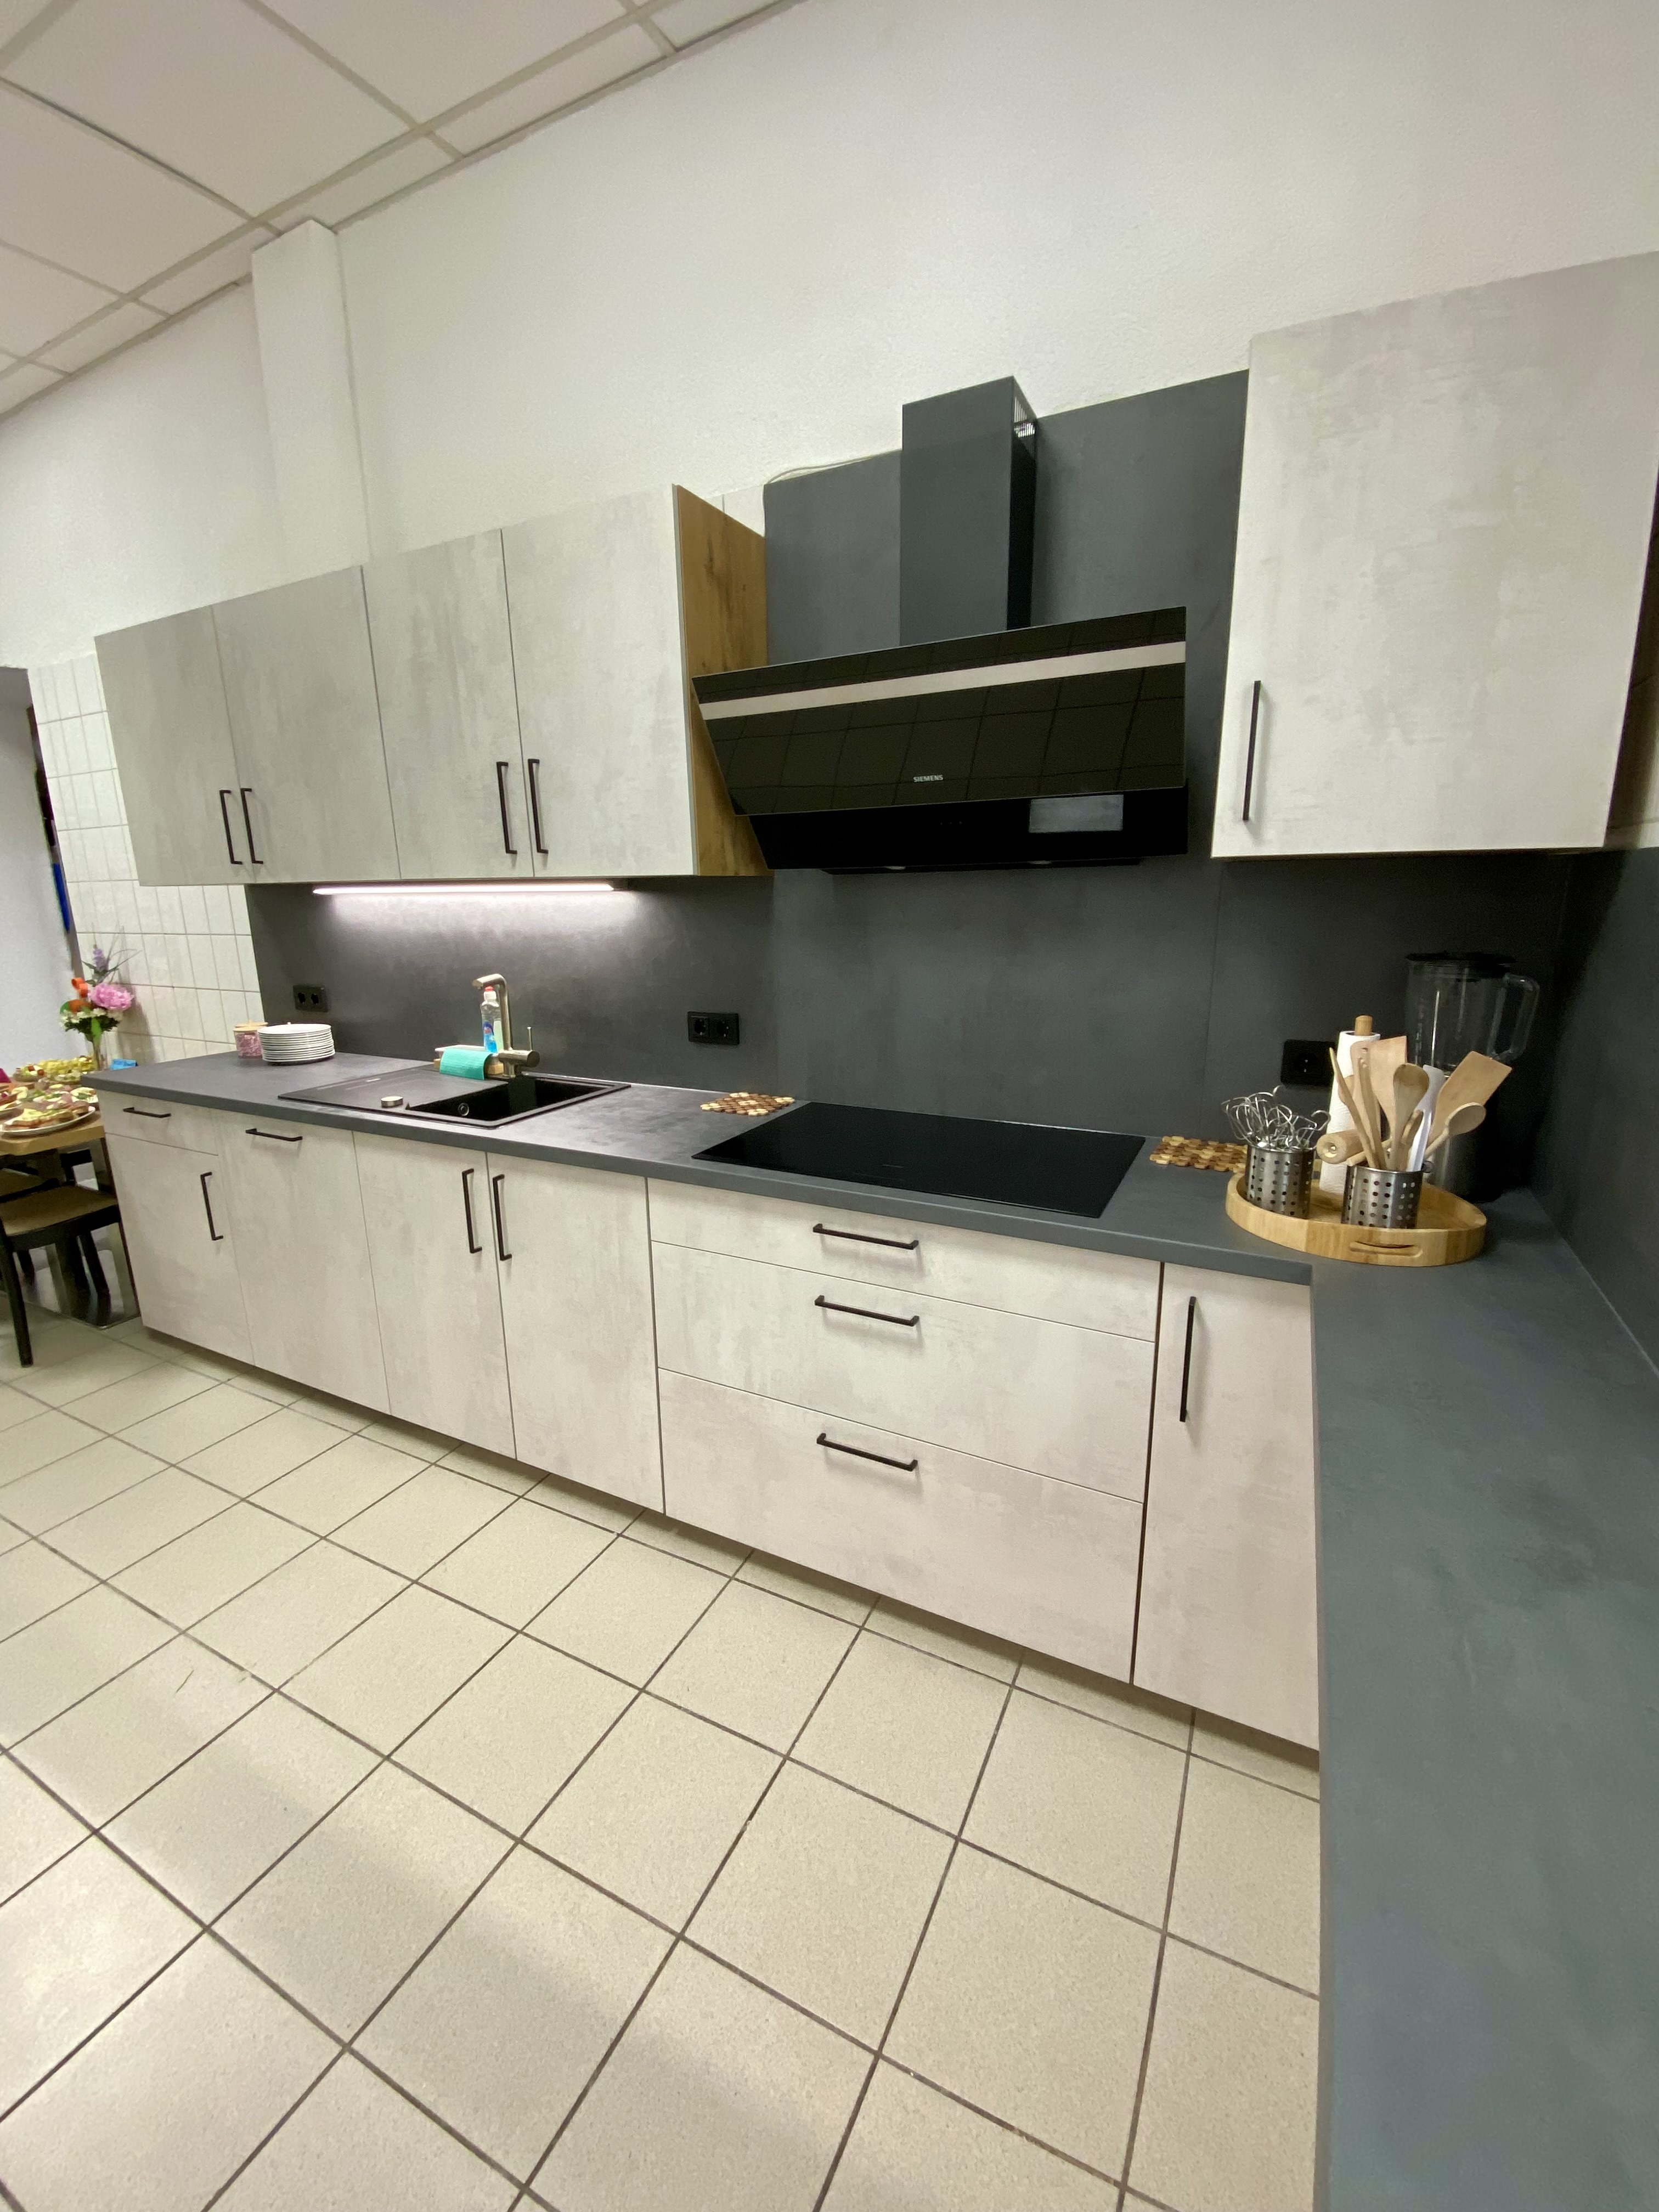 Eine moderne Küchenzeile mit grauen Schränken und einer schwarzen Arbeitsplatte, ausgestattet mit einer Spüle, einigen Küchenutensilien und einer Dunstabzugshaube. Der Raum hat geflieste Böden und ist in neutralen Farbtönen gehalten.